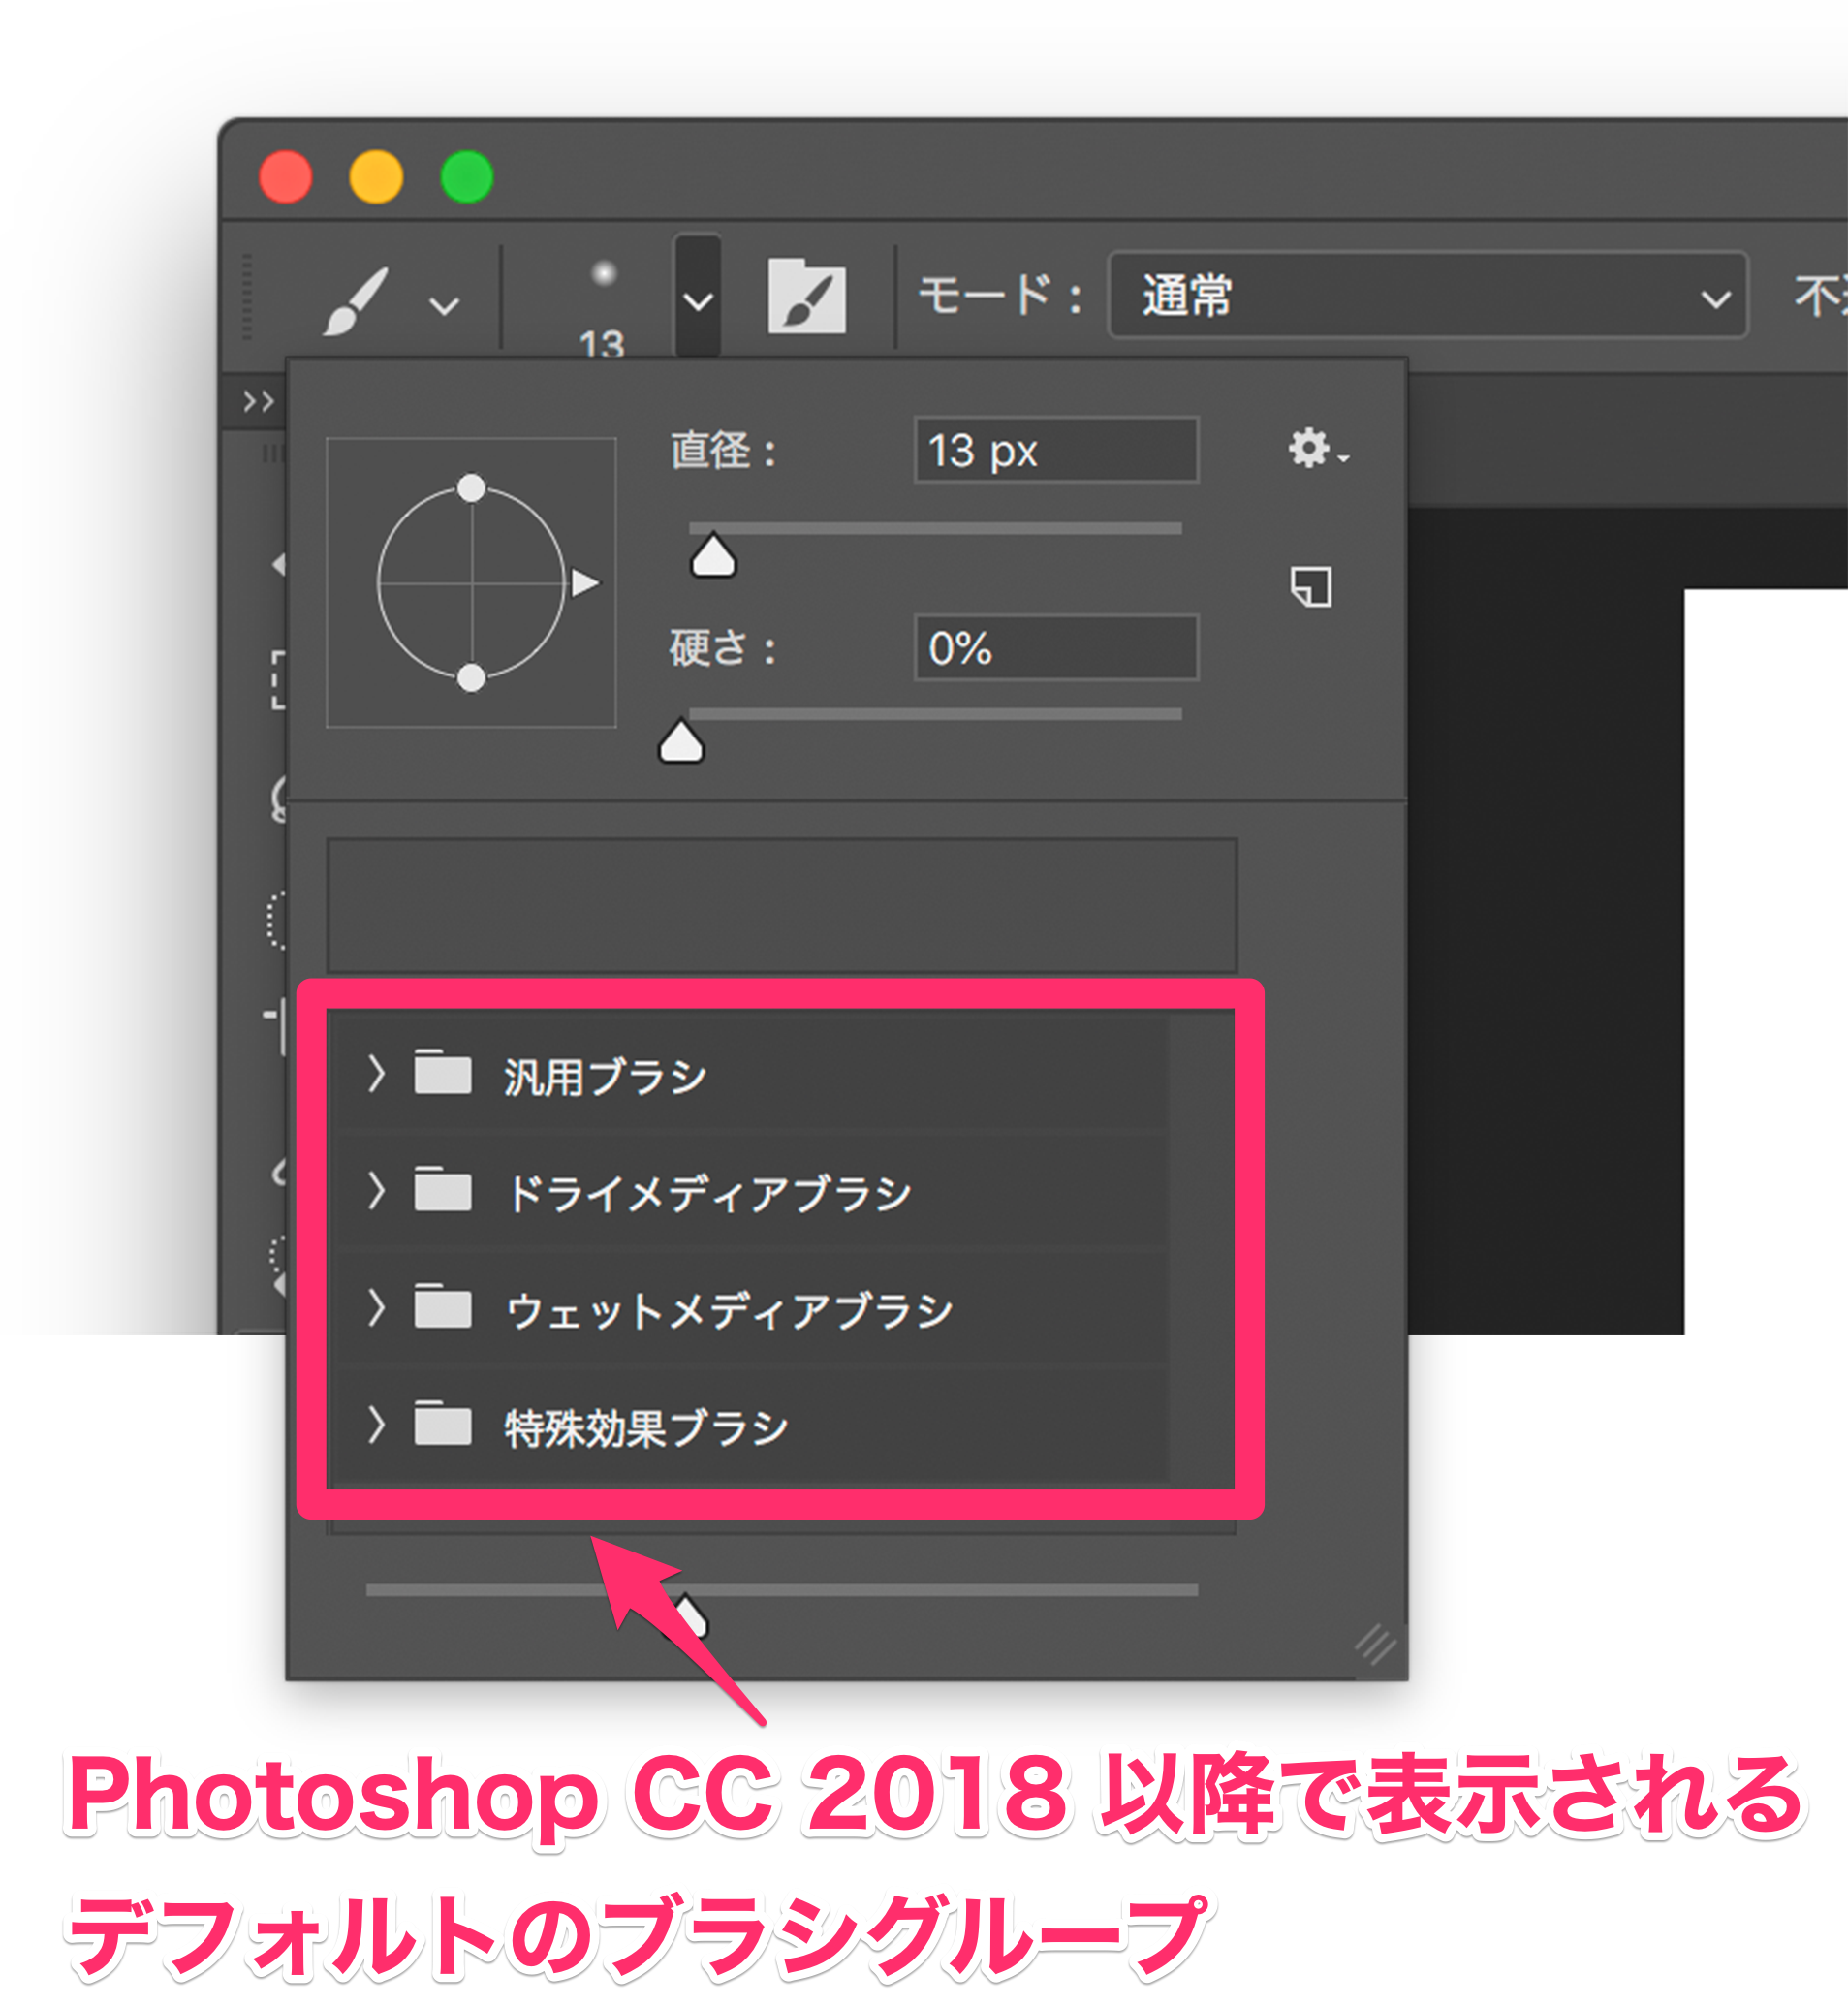 以前の Photoshop のバージョンで使用できていたブラシがありません Photoshop Cc 18 Cc 19 Too クリエイターズfaq 株式会社too